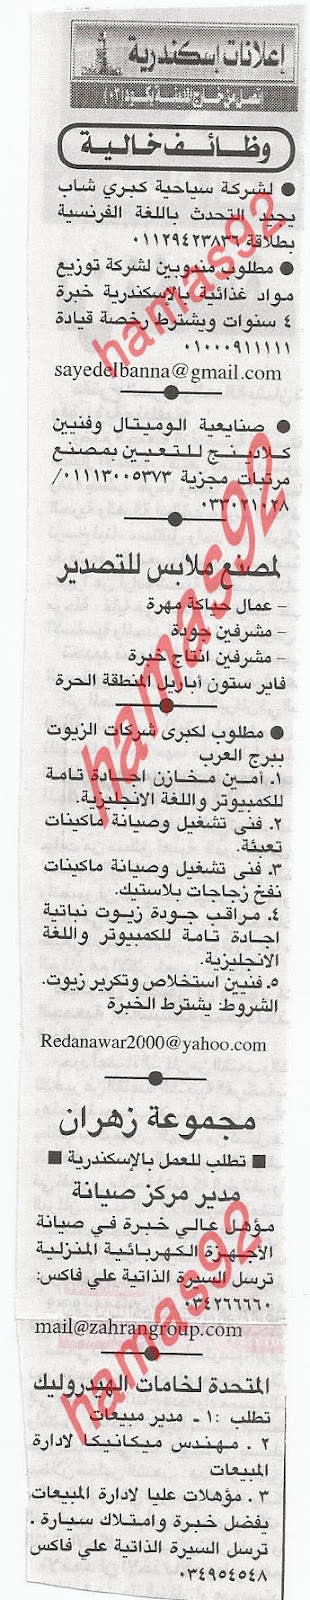 وظائف جريدة اهرام الجمعة 2 مارس 2012 , الجزء الاول %D8%A7%D9%87%D8%B1%D8%A7%D9%85+2